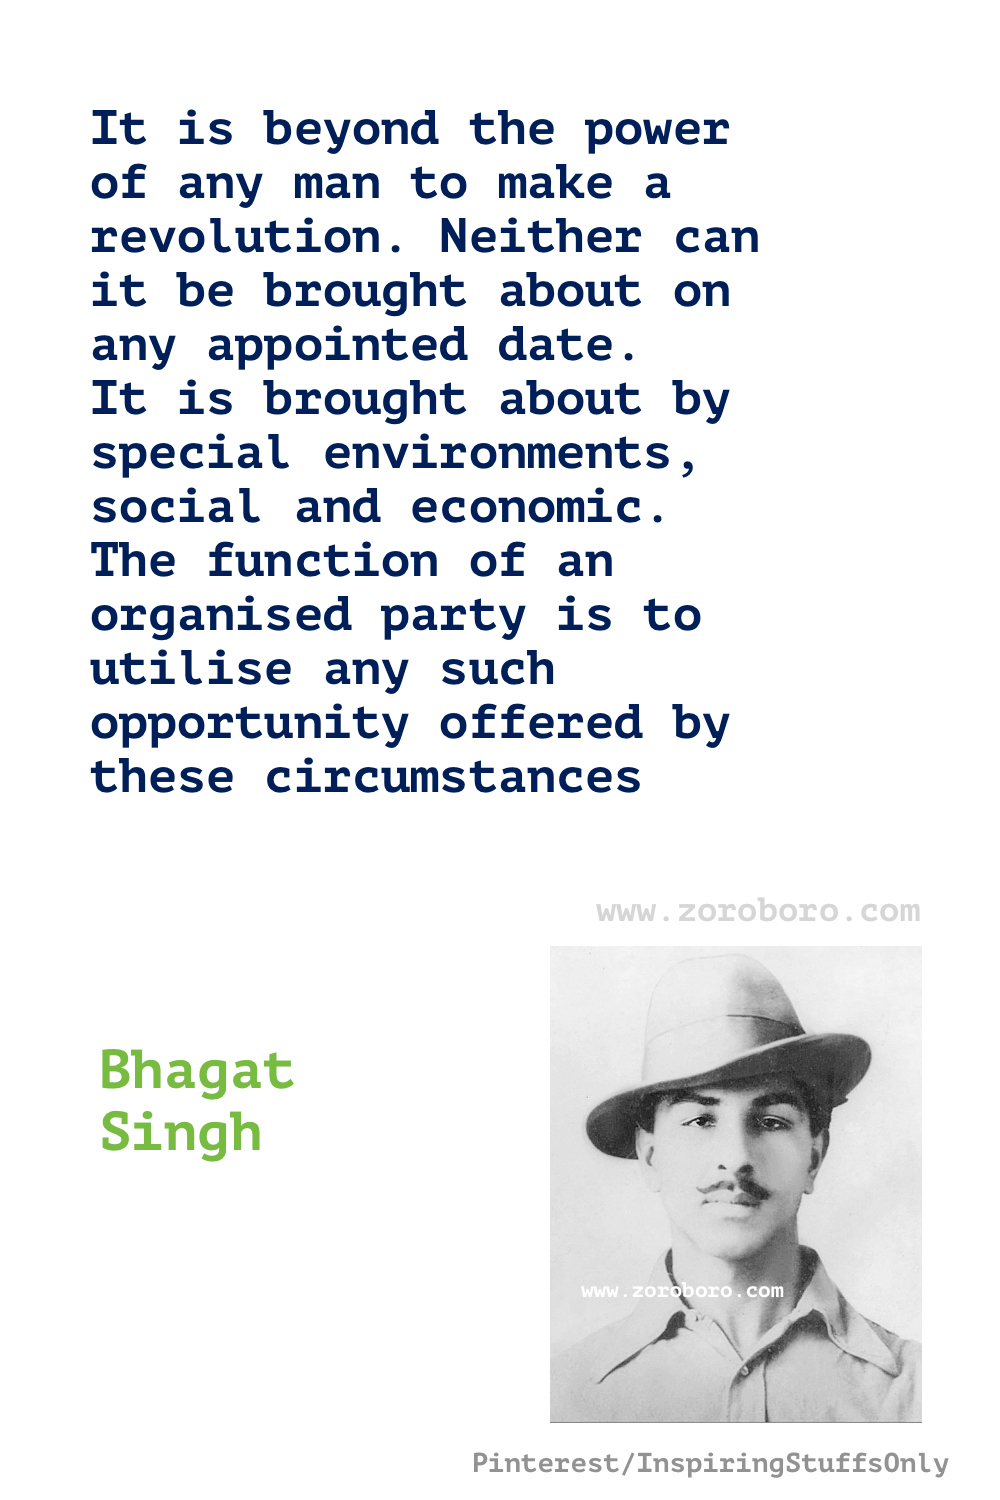 Bhagat Singh Quotes. Bhagat Singh Quotes, Struggle, Revolution, Bhagat Singh Images, Bhagat Singh Slogans & Bhagat Singh Biography. Bhagat Singh Hindi Quotes & Bhagat Singh English Quotes, Bhagat Singh Jayanti , Photo